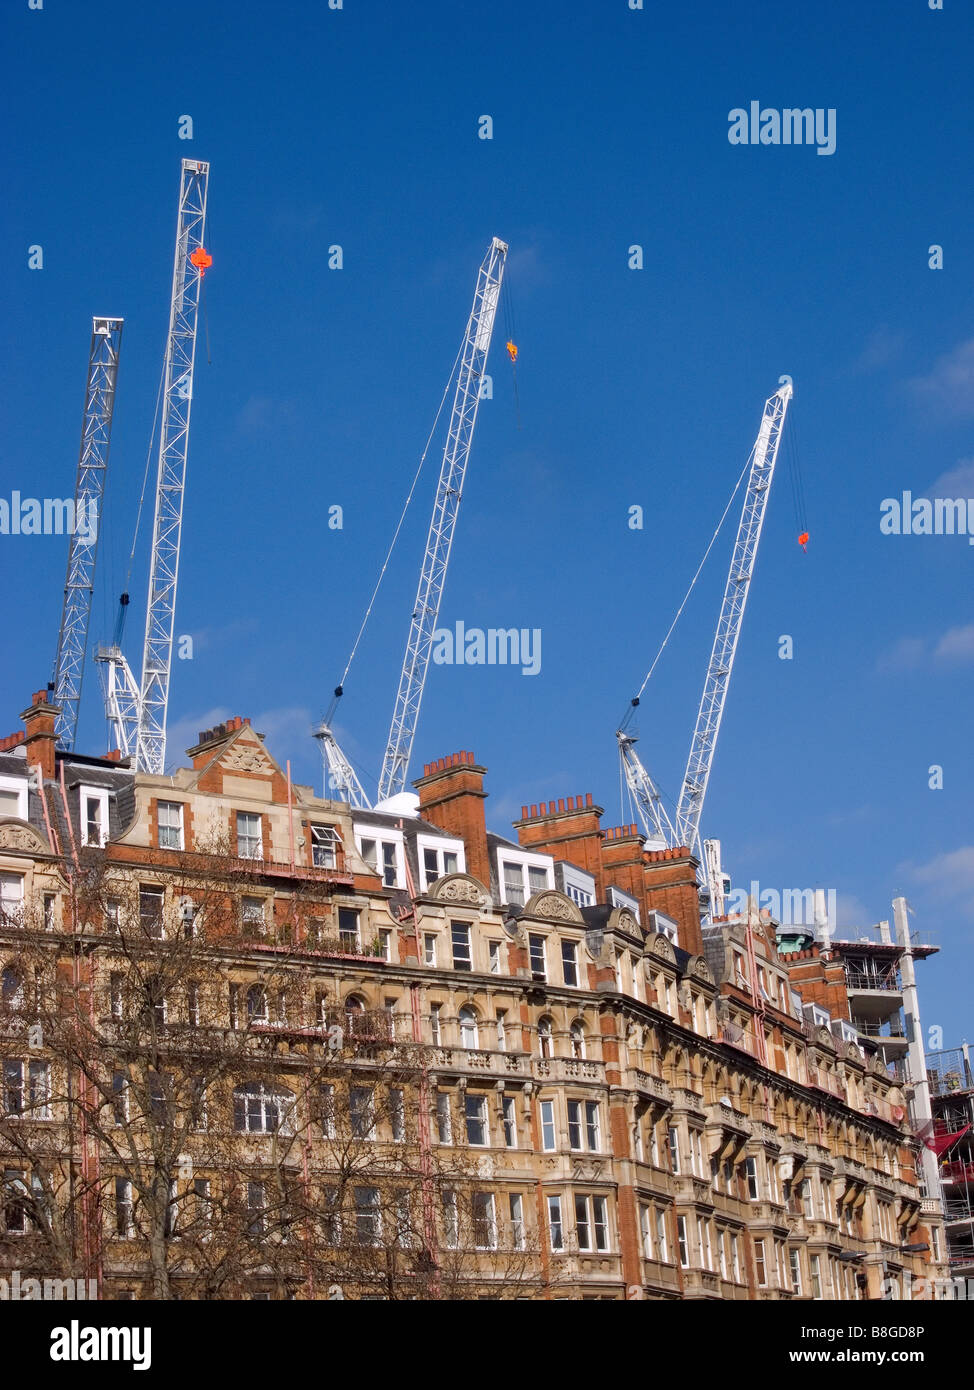 Tre luffing jib gru a torre e una gru a torre in uso su di un edificio sito nel quartiere di Knightsbridge di Londra dietro edificio esistente Foto Stock